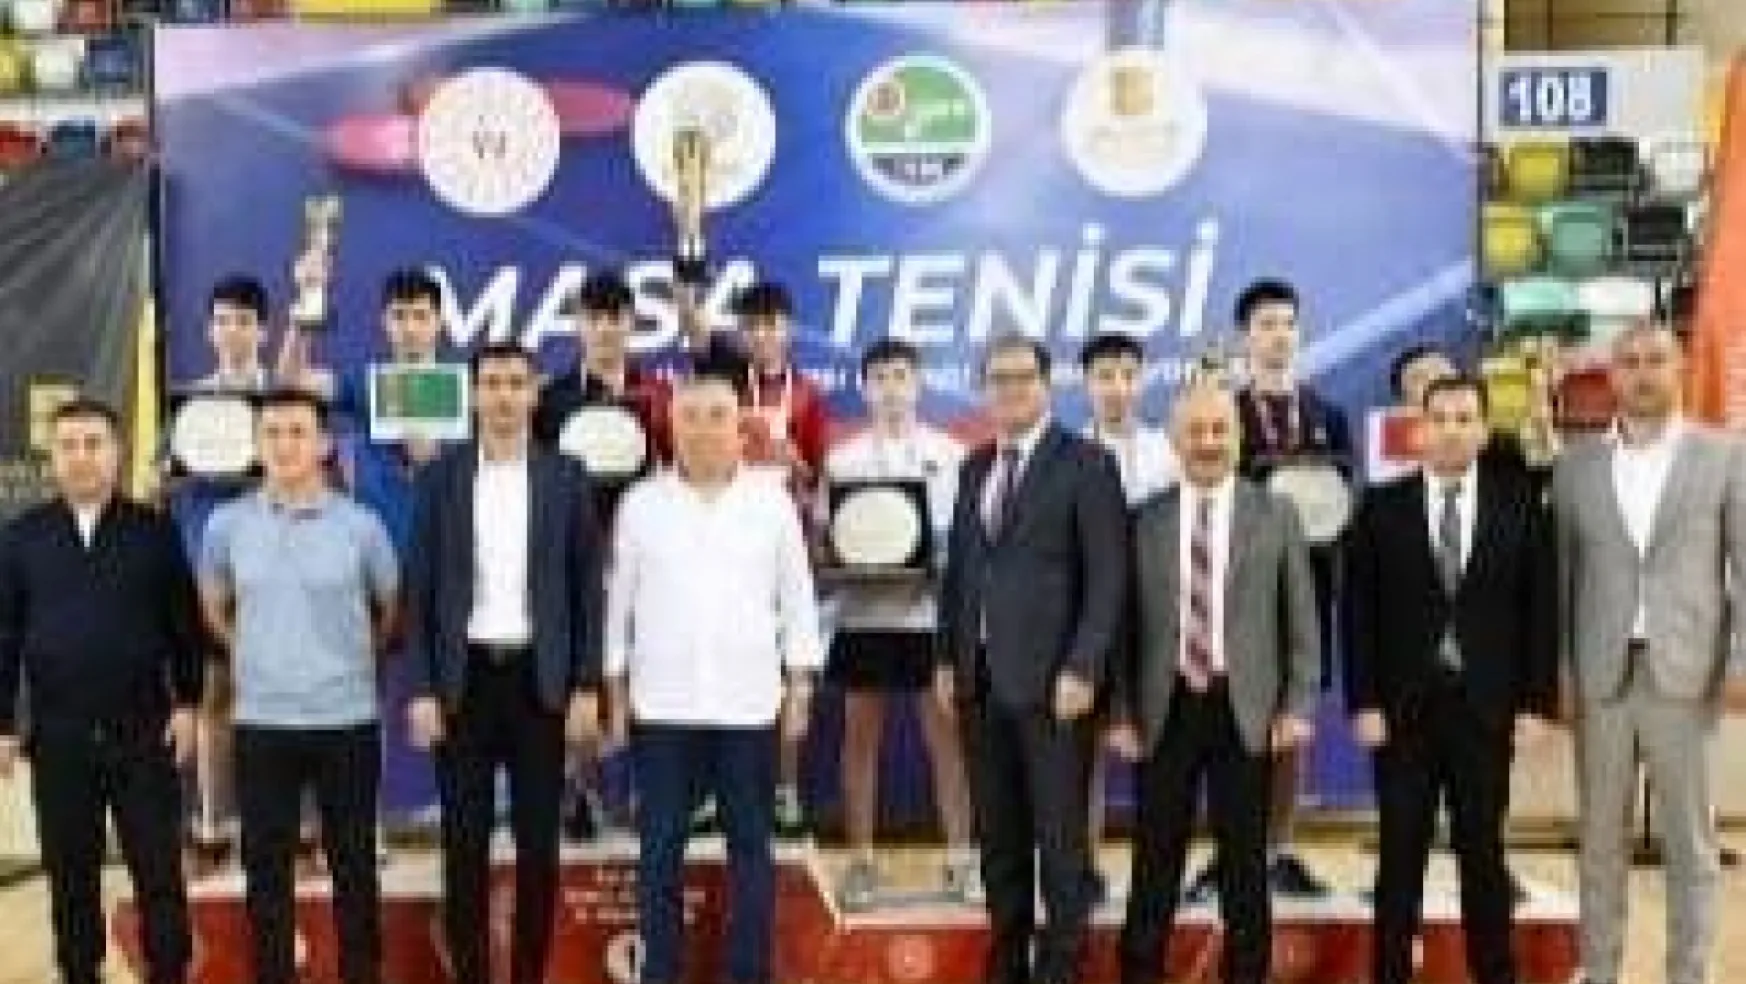 Başkan Çolakbayrakdar: 'Sporcularımızla dünya şampiyonluklarına yelken açıyoruz'